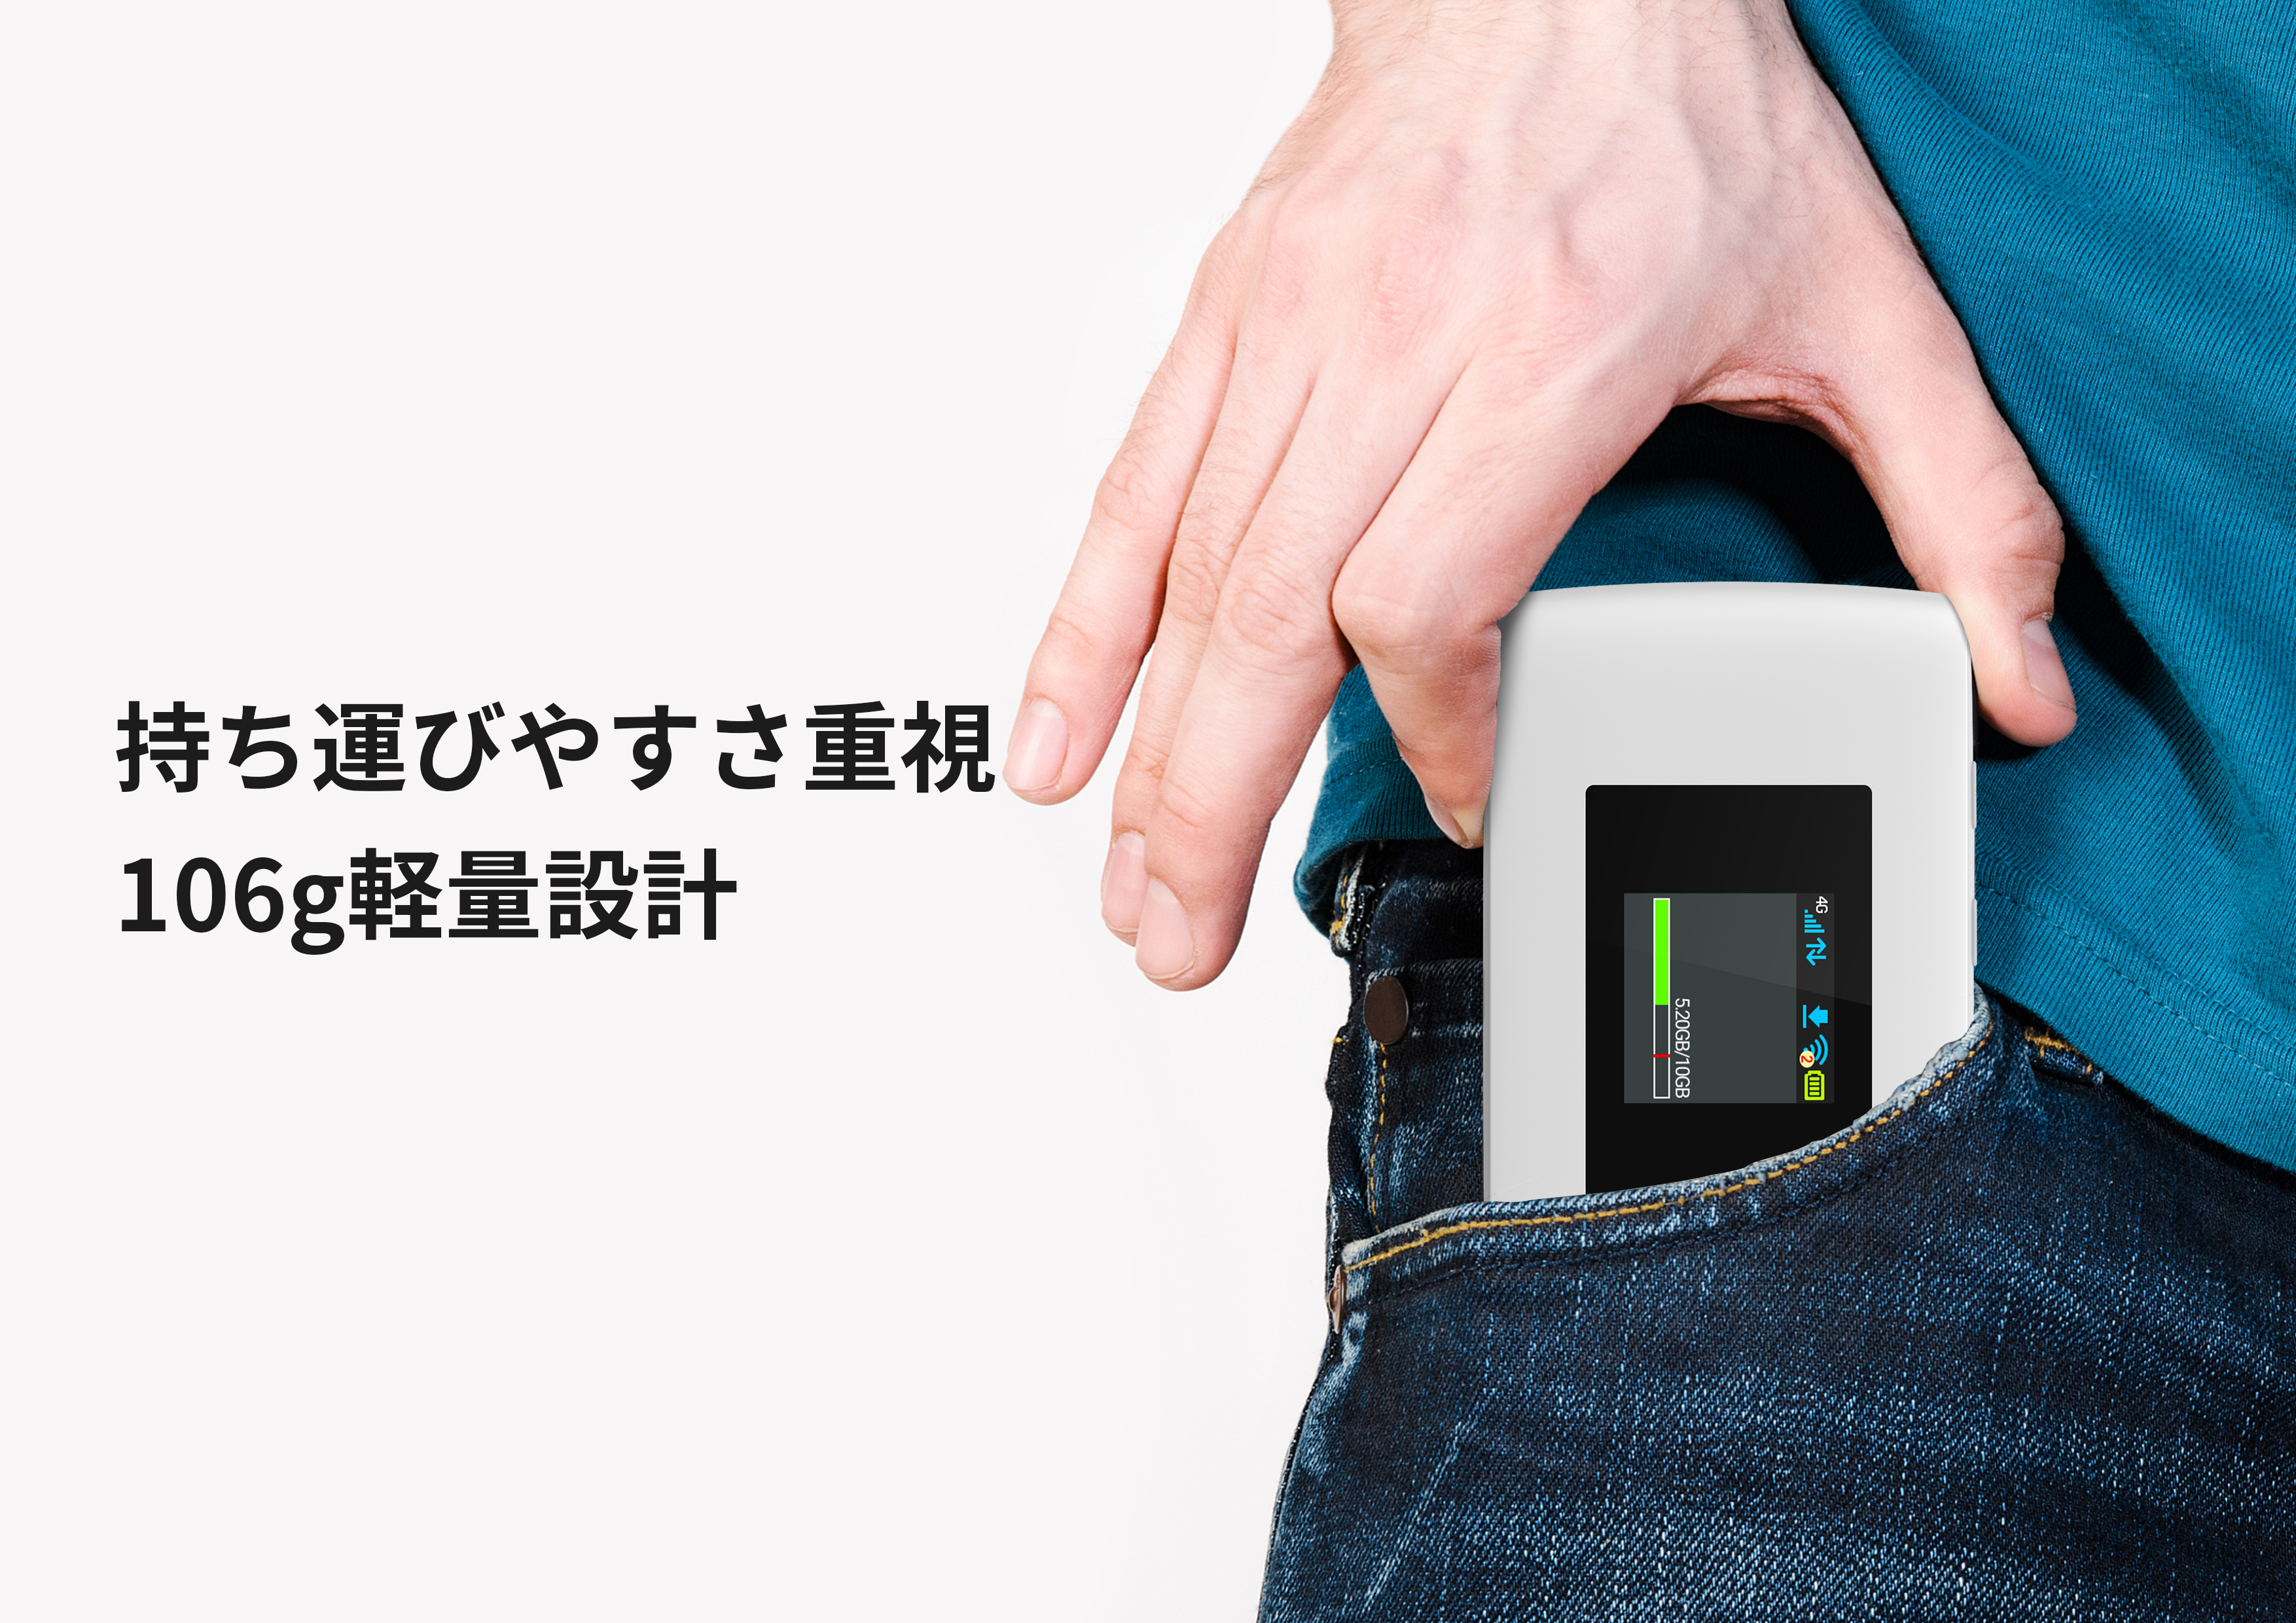 ZTE Cute Wi-Fi – ZTE Device Japan